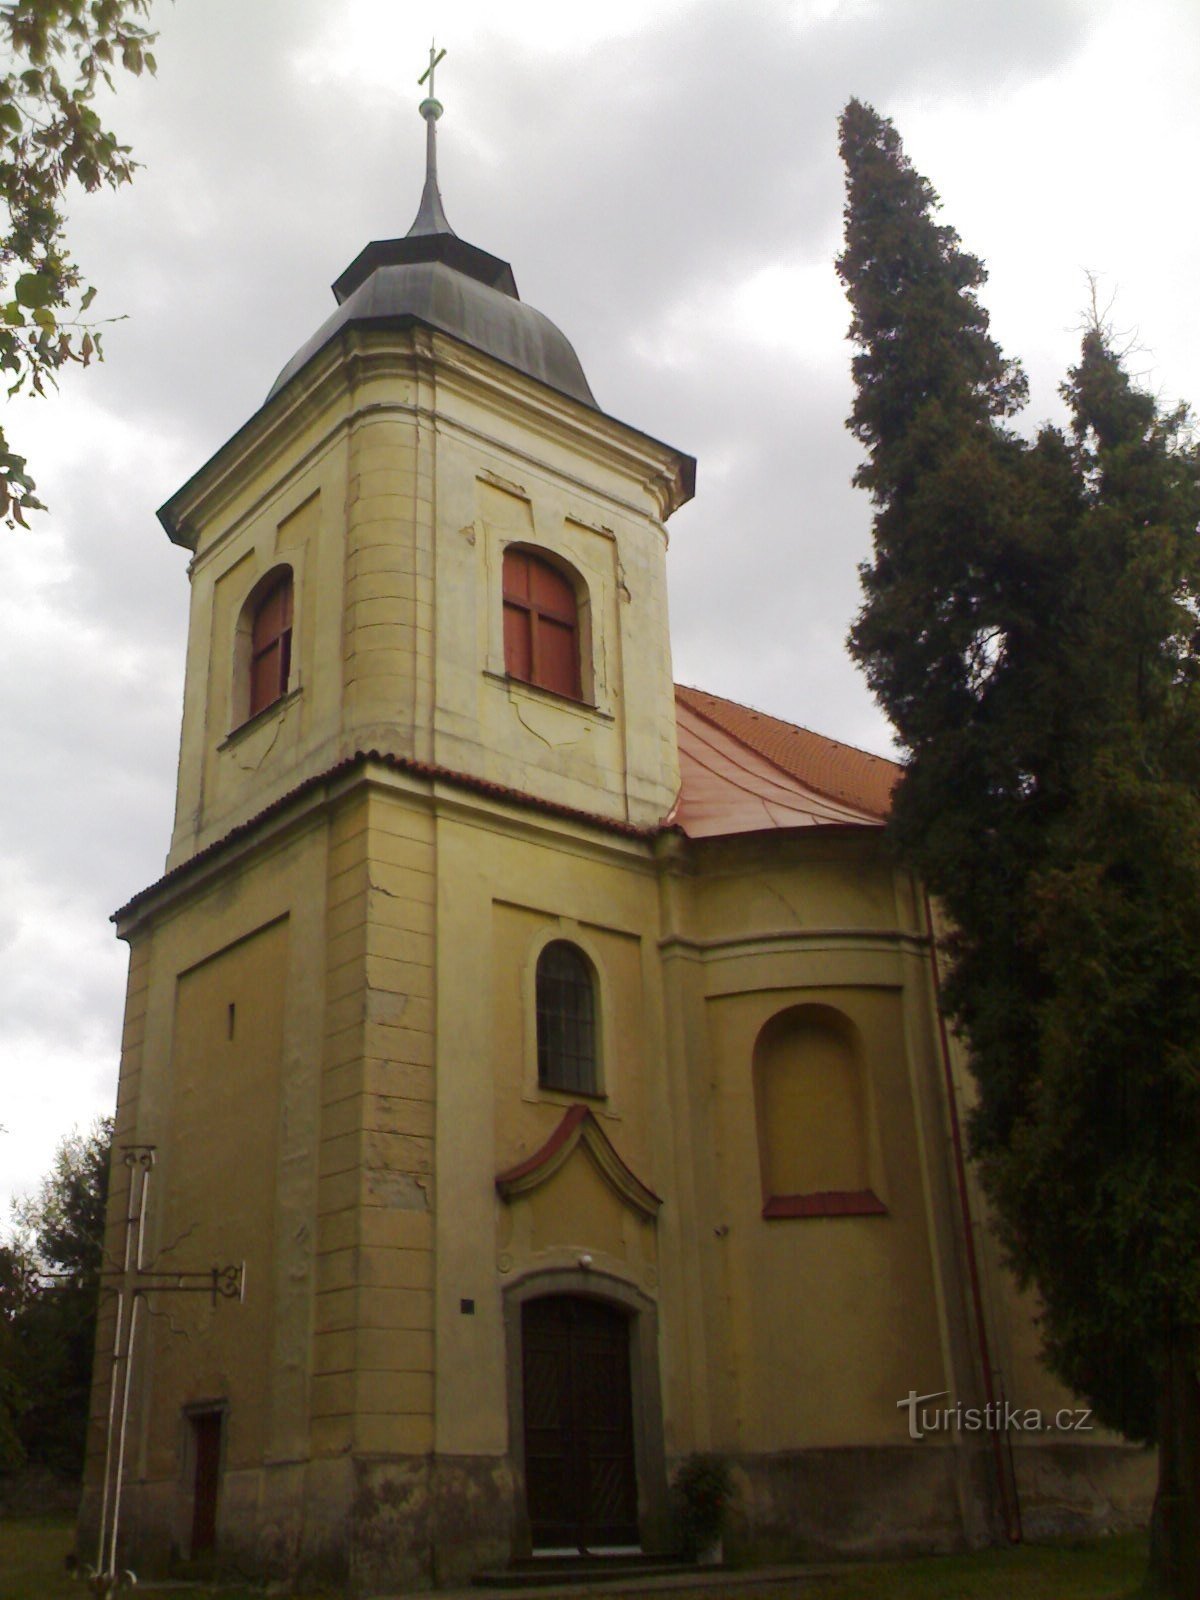 Високе Хвойно - церква св. Готард